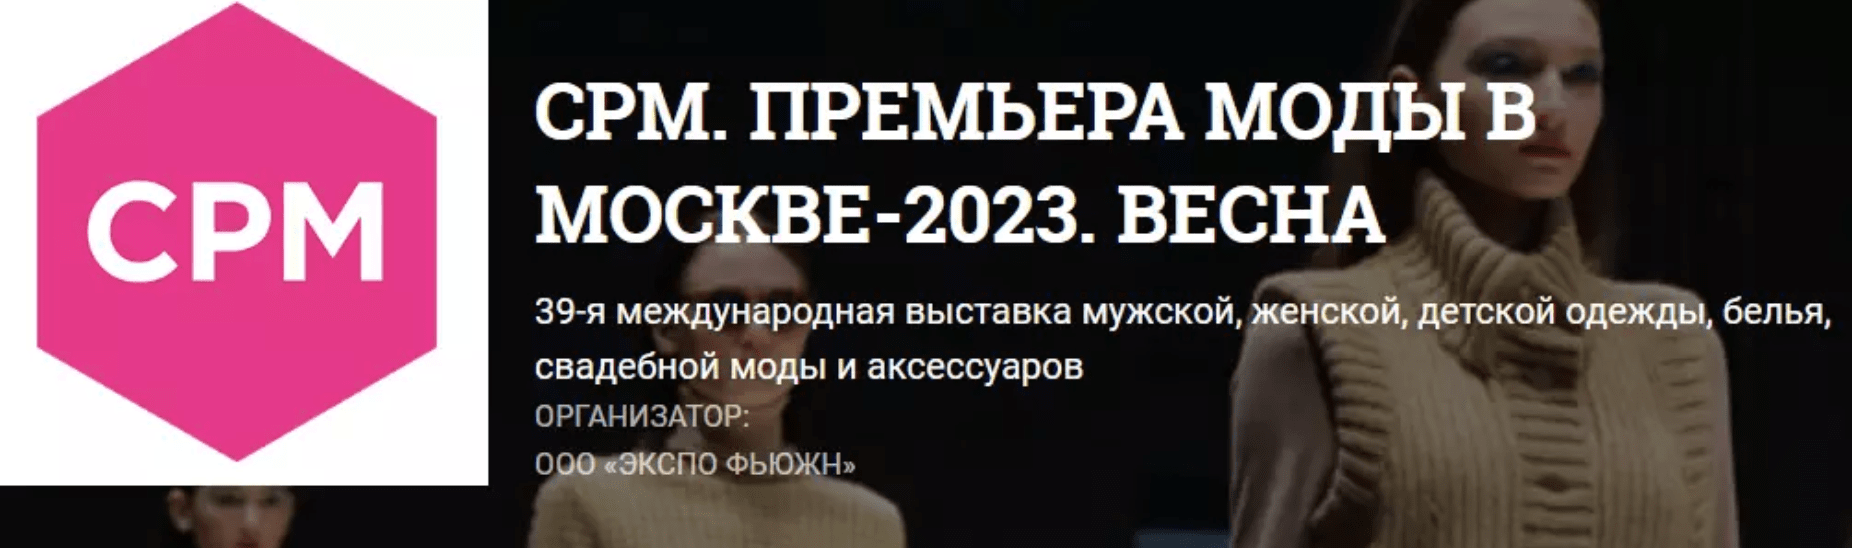 CPM. ПРЕМЬЕРА МОДЫ В МОСКВЕ-2023. ВЕСНА